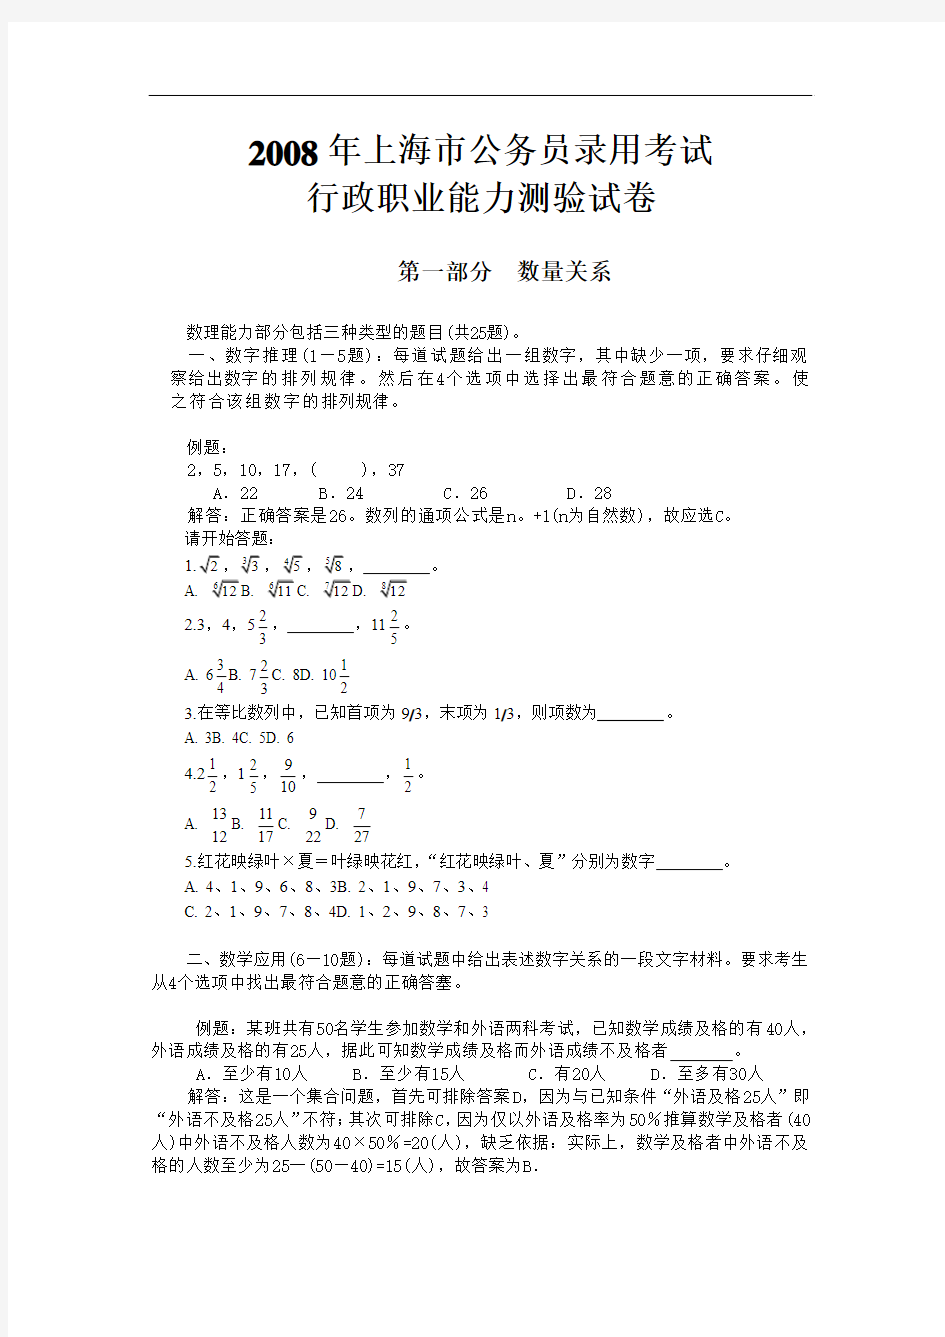 2010年上海市公务员考试行测真题【完整+答案+解析】